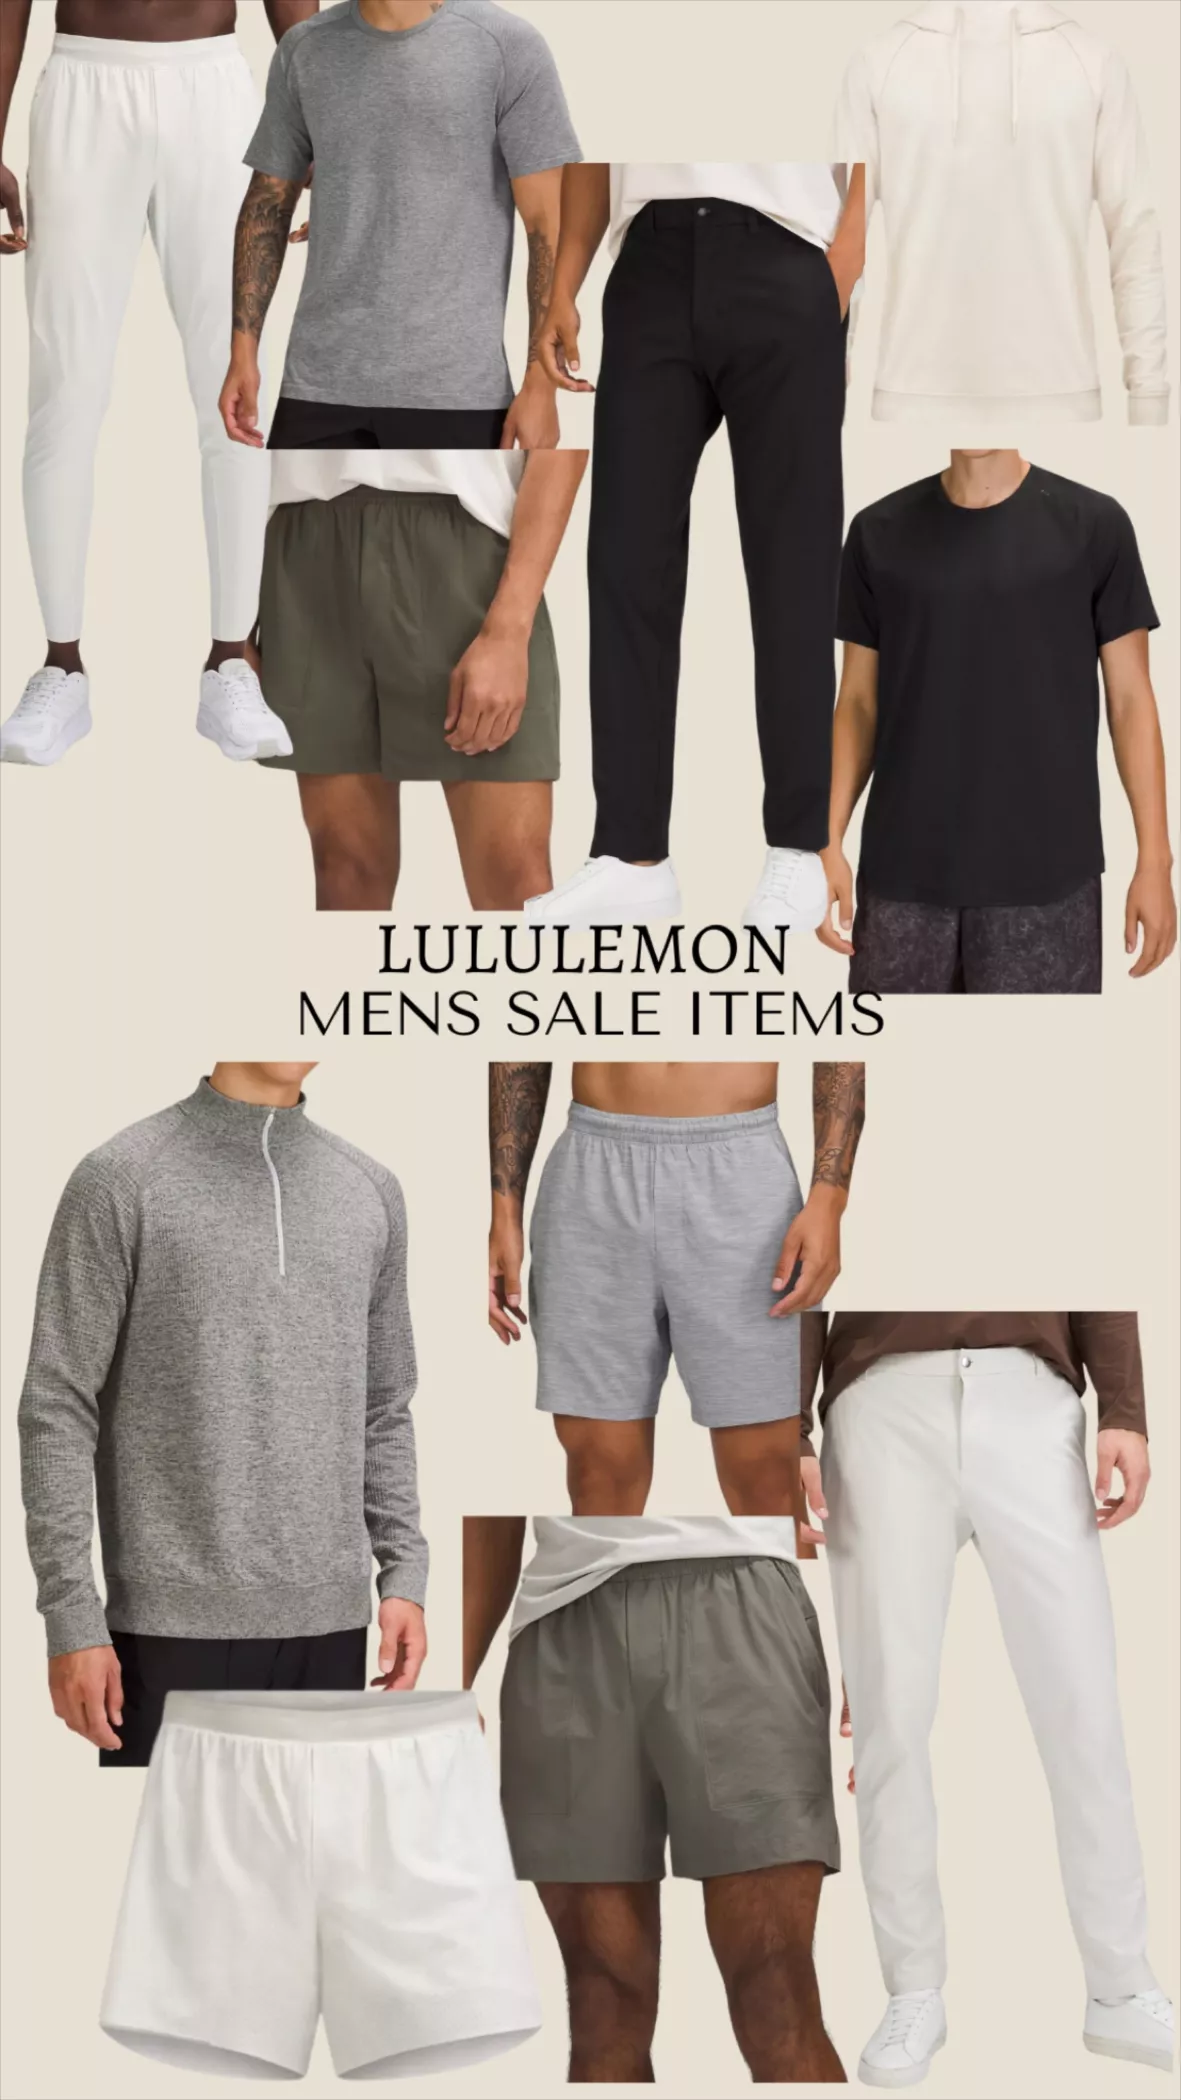 Commission Slim-Fit Pant 34 *Warpstreme, Men's Trousers